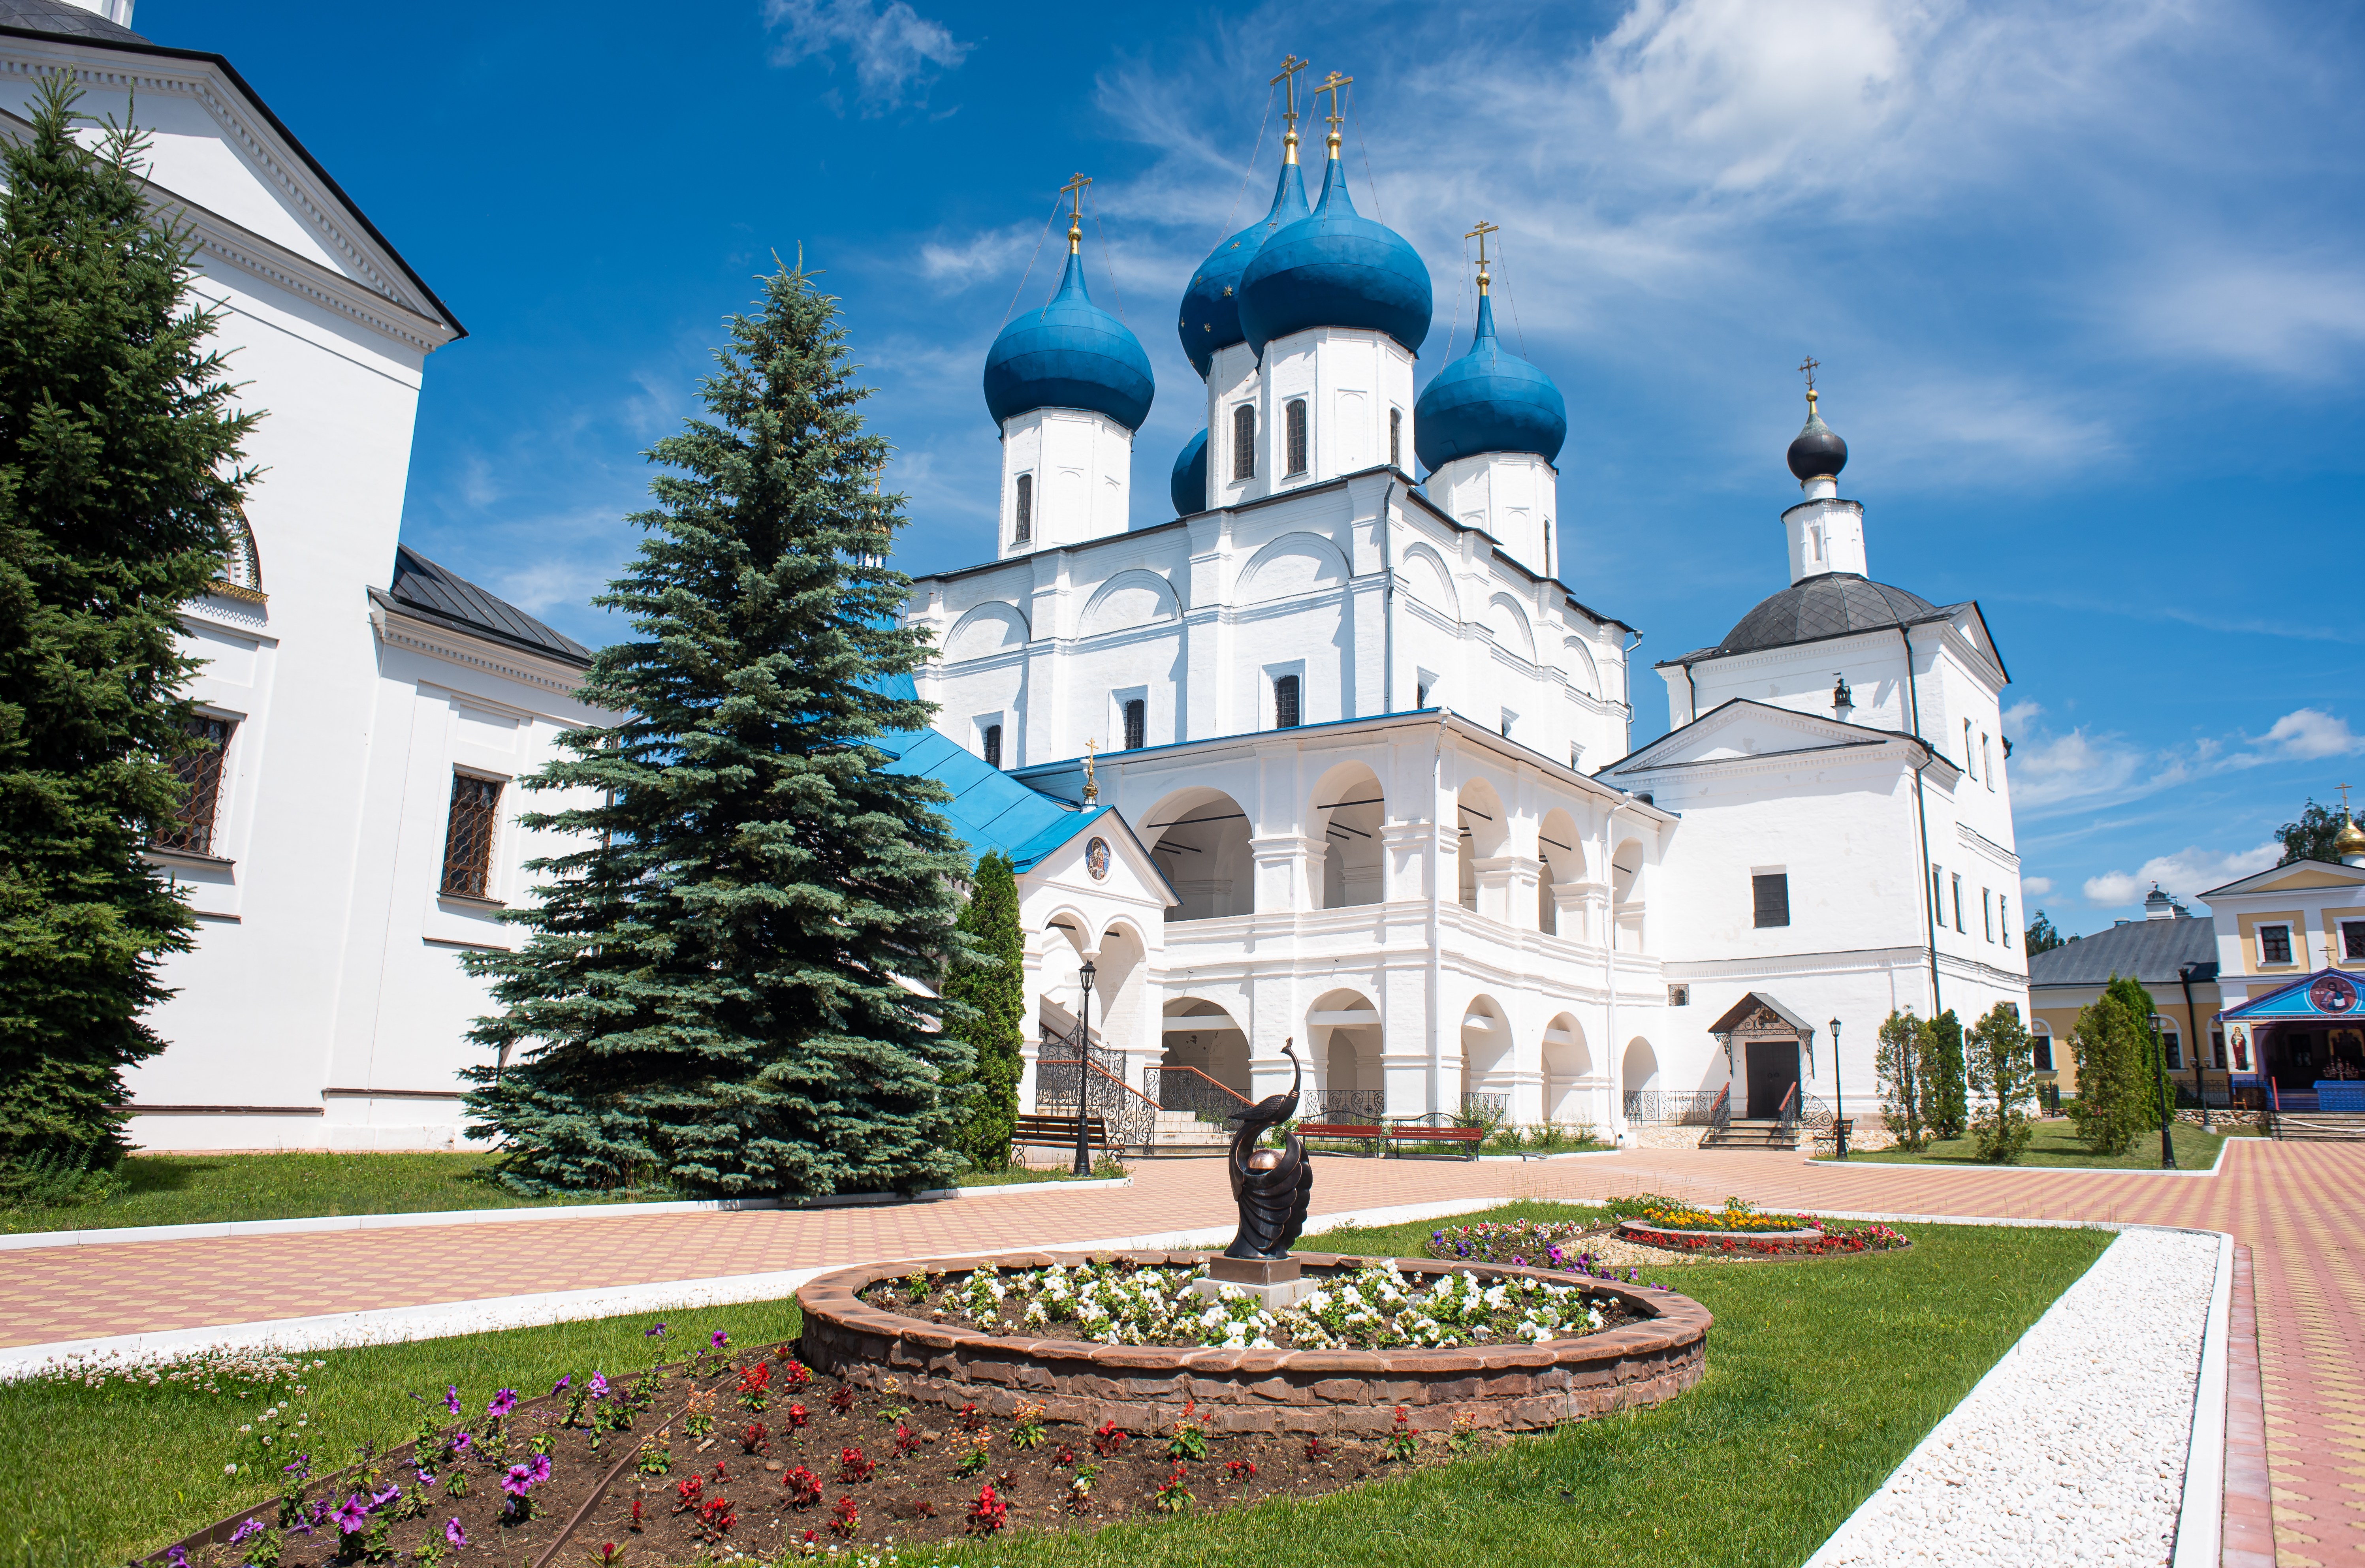 Монастырь был основан в 1374 году преподобным Сергием Радонежским